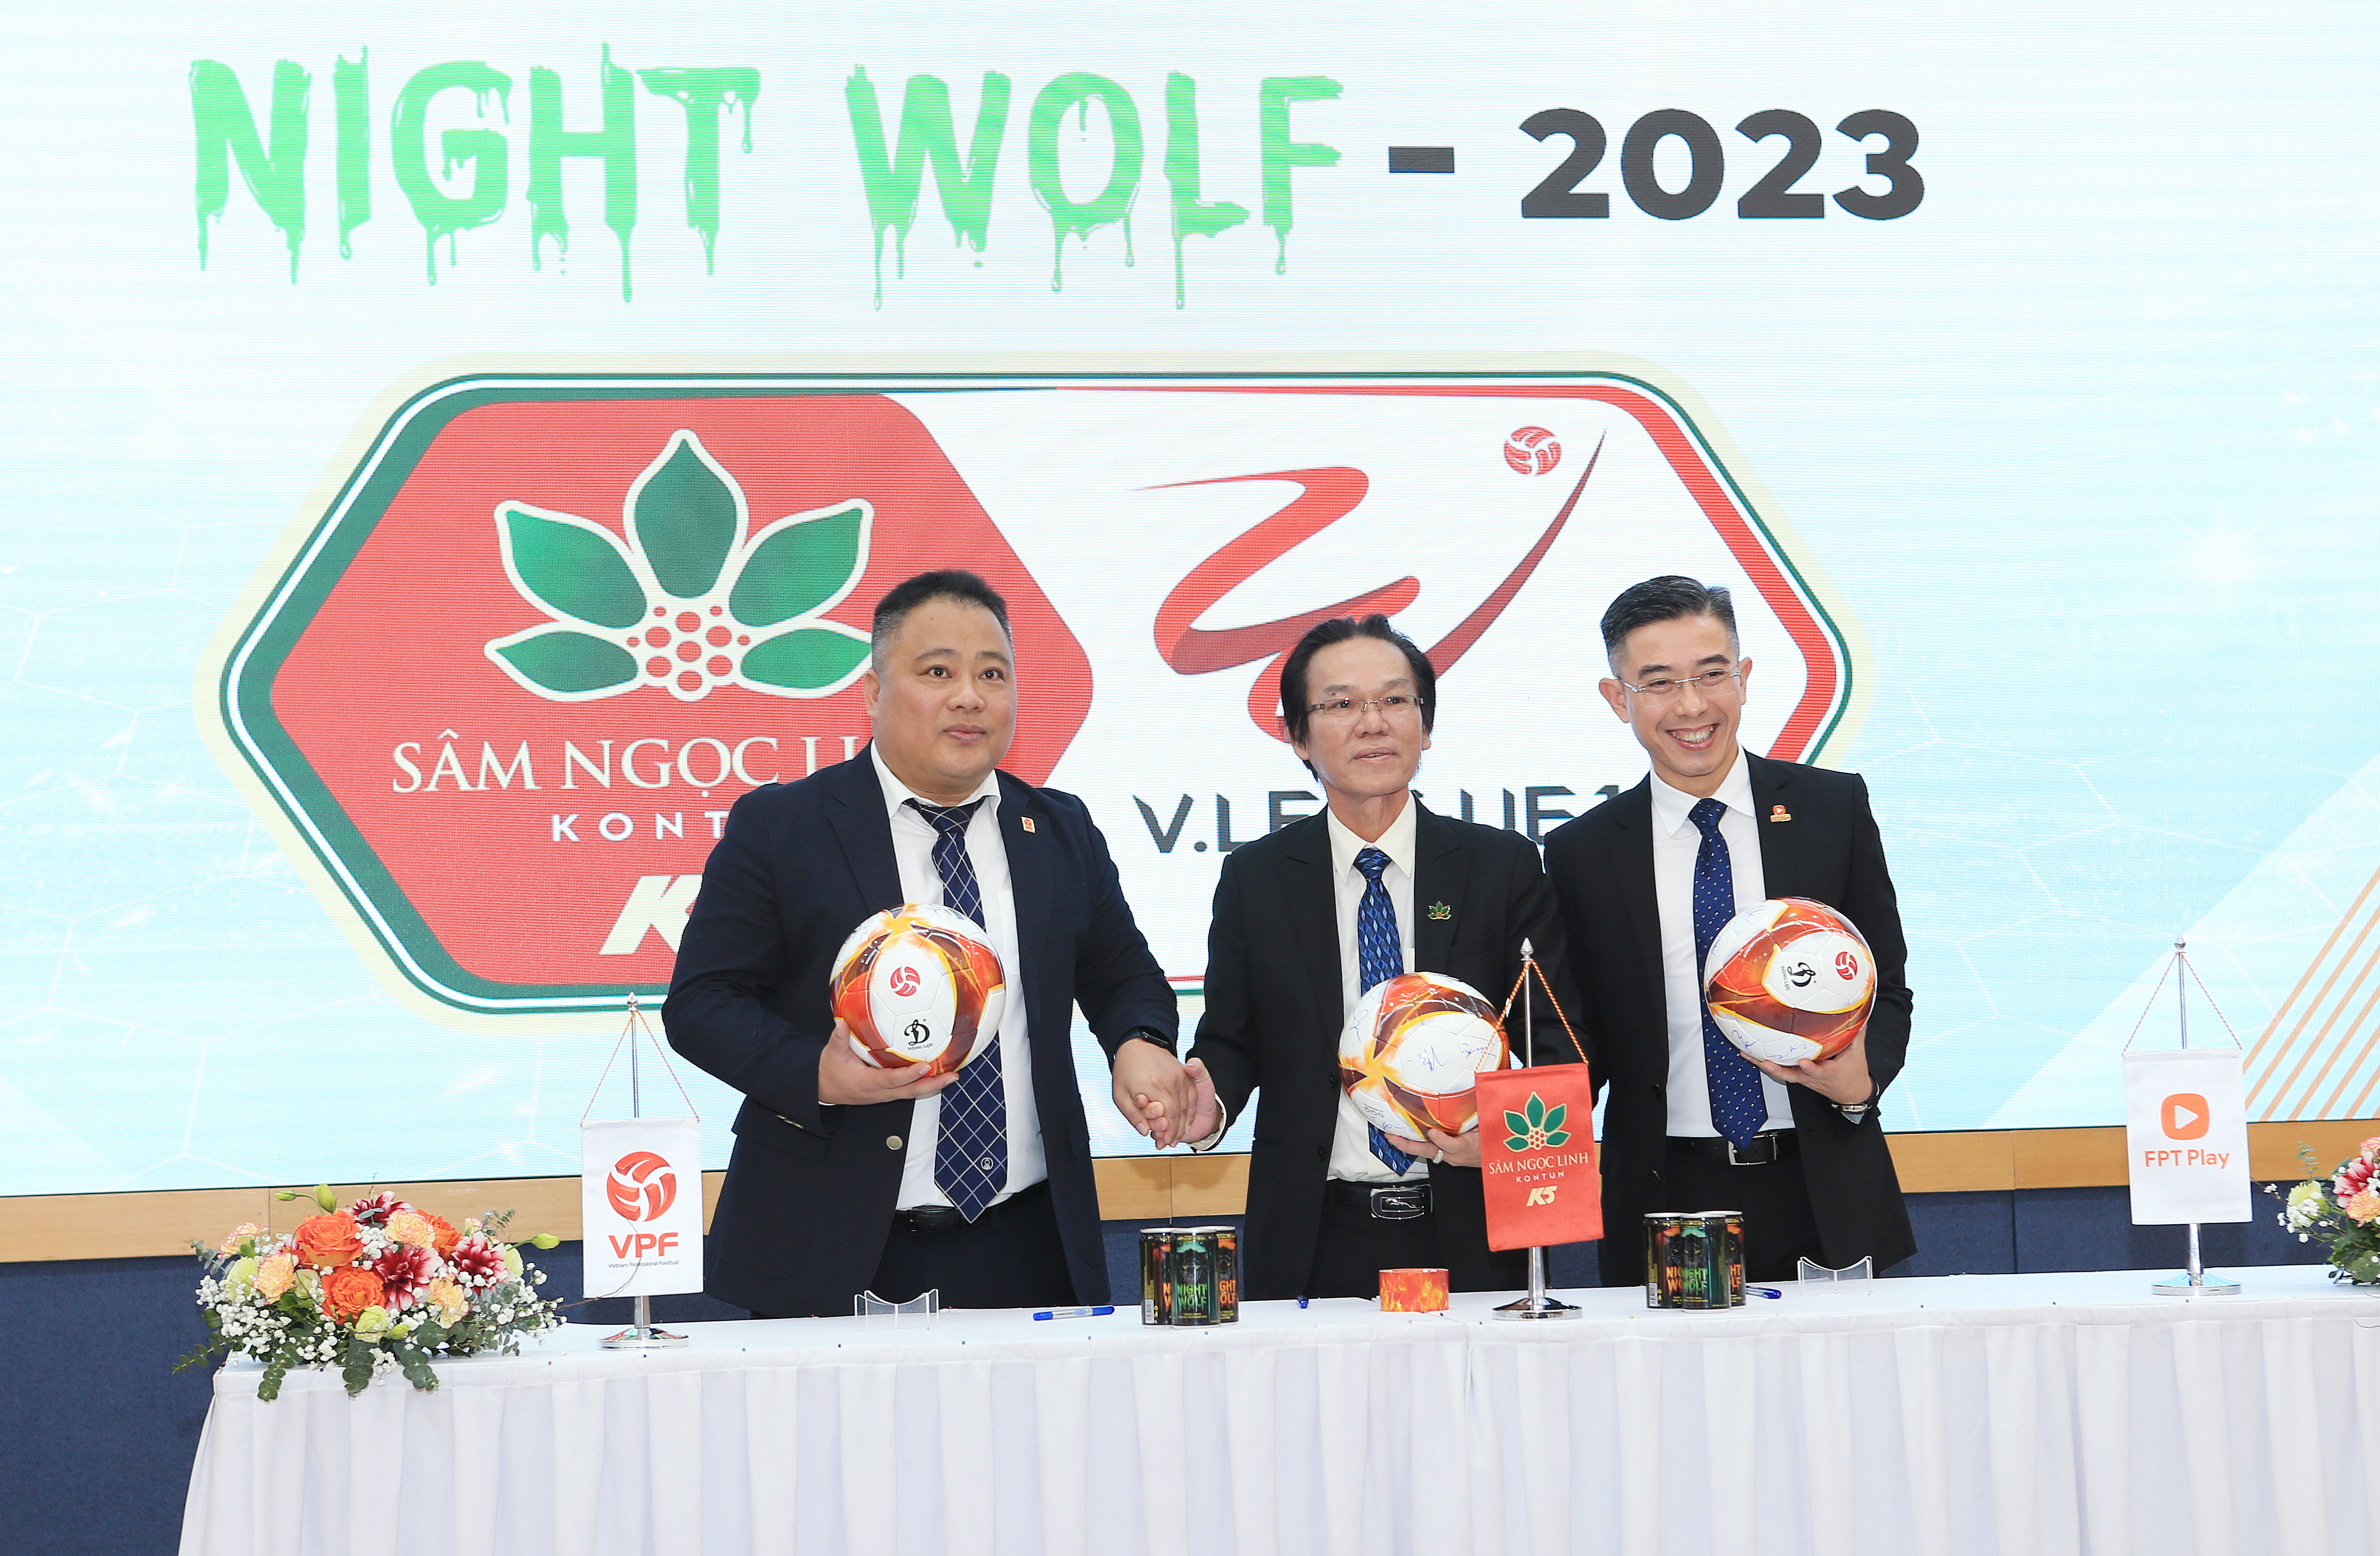 Sâm Ngọc Linh Kom Tum K5 - Với thương hiệu Night Wolf tiếp tục đồng hành cùng V.League 2023 - Ảnh: Đức Cường 